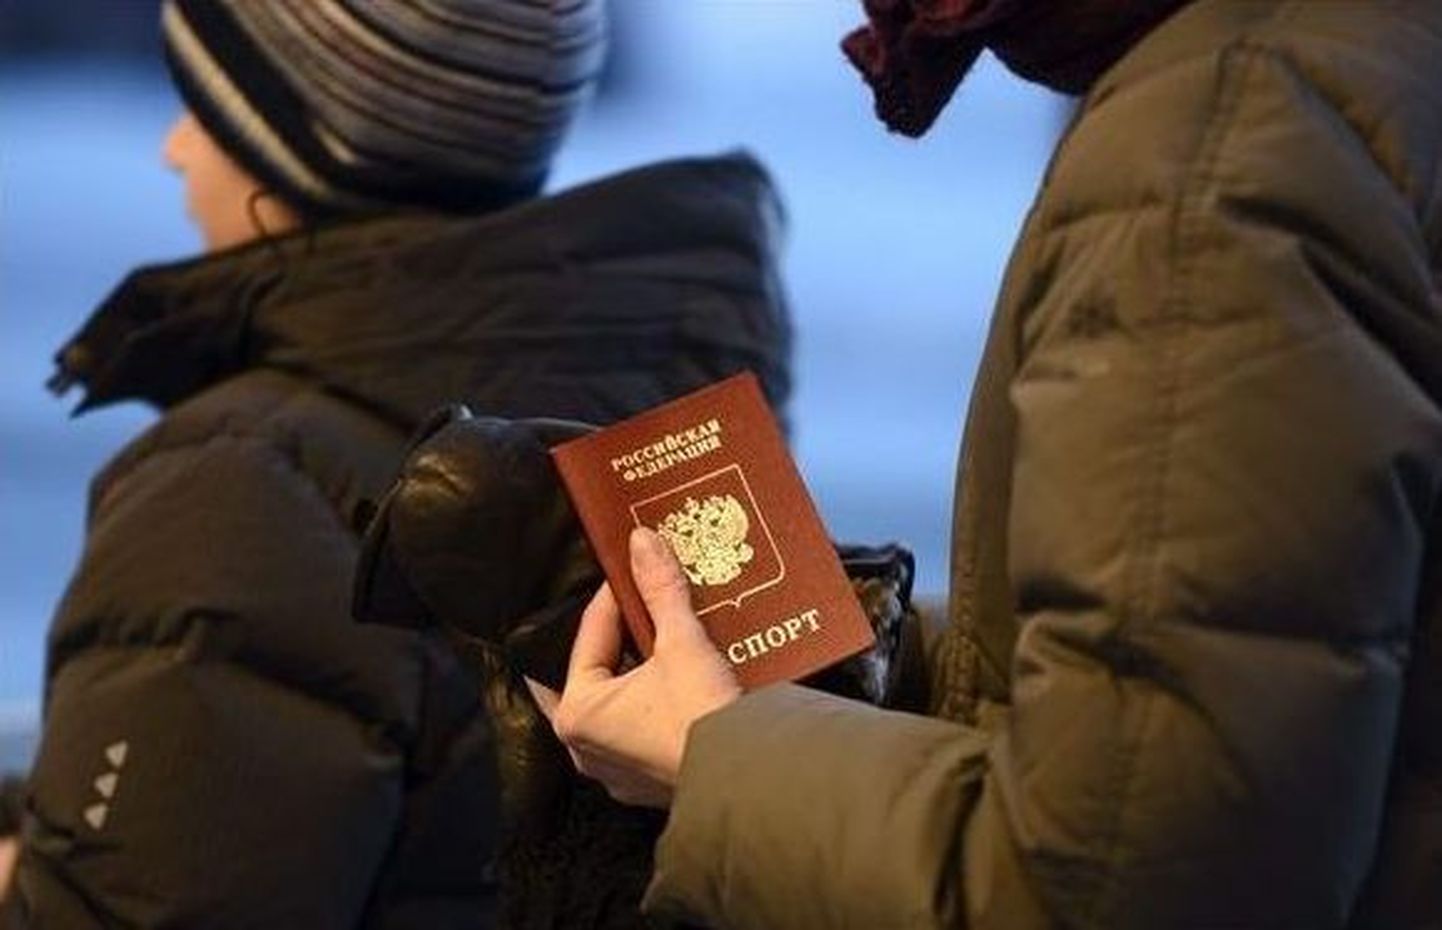 Venemaa kodakondsusega isikud